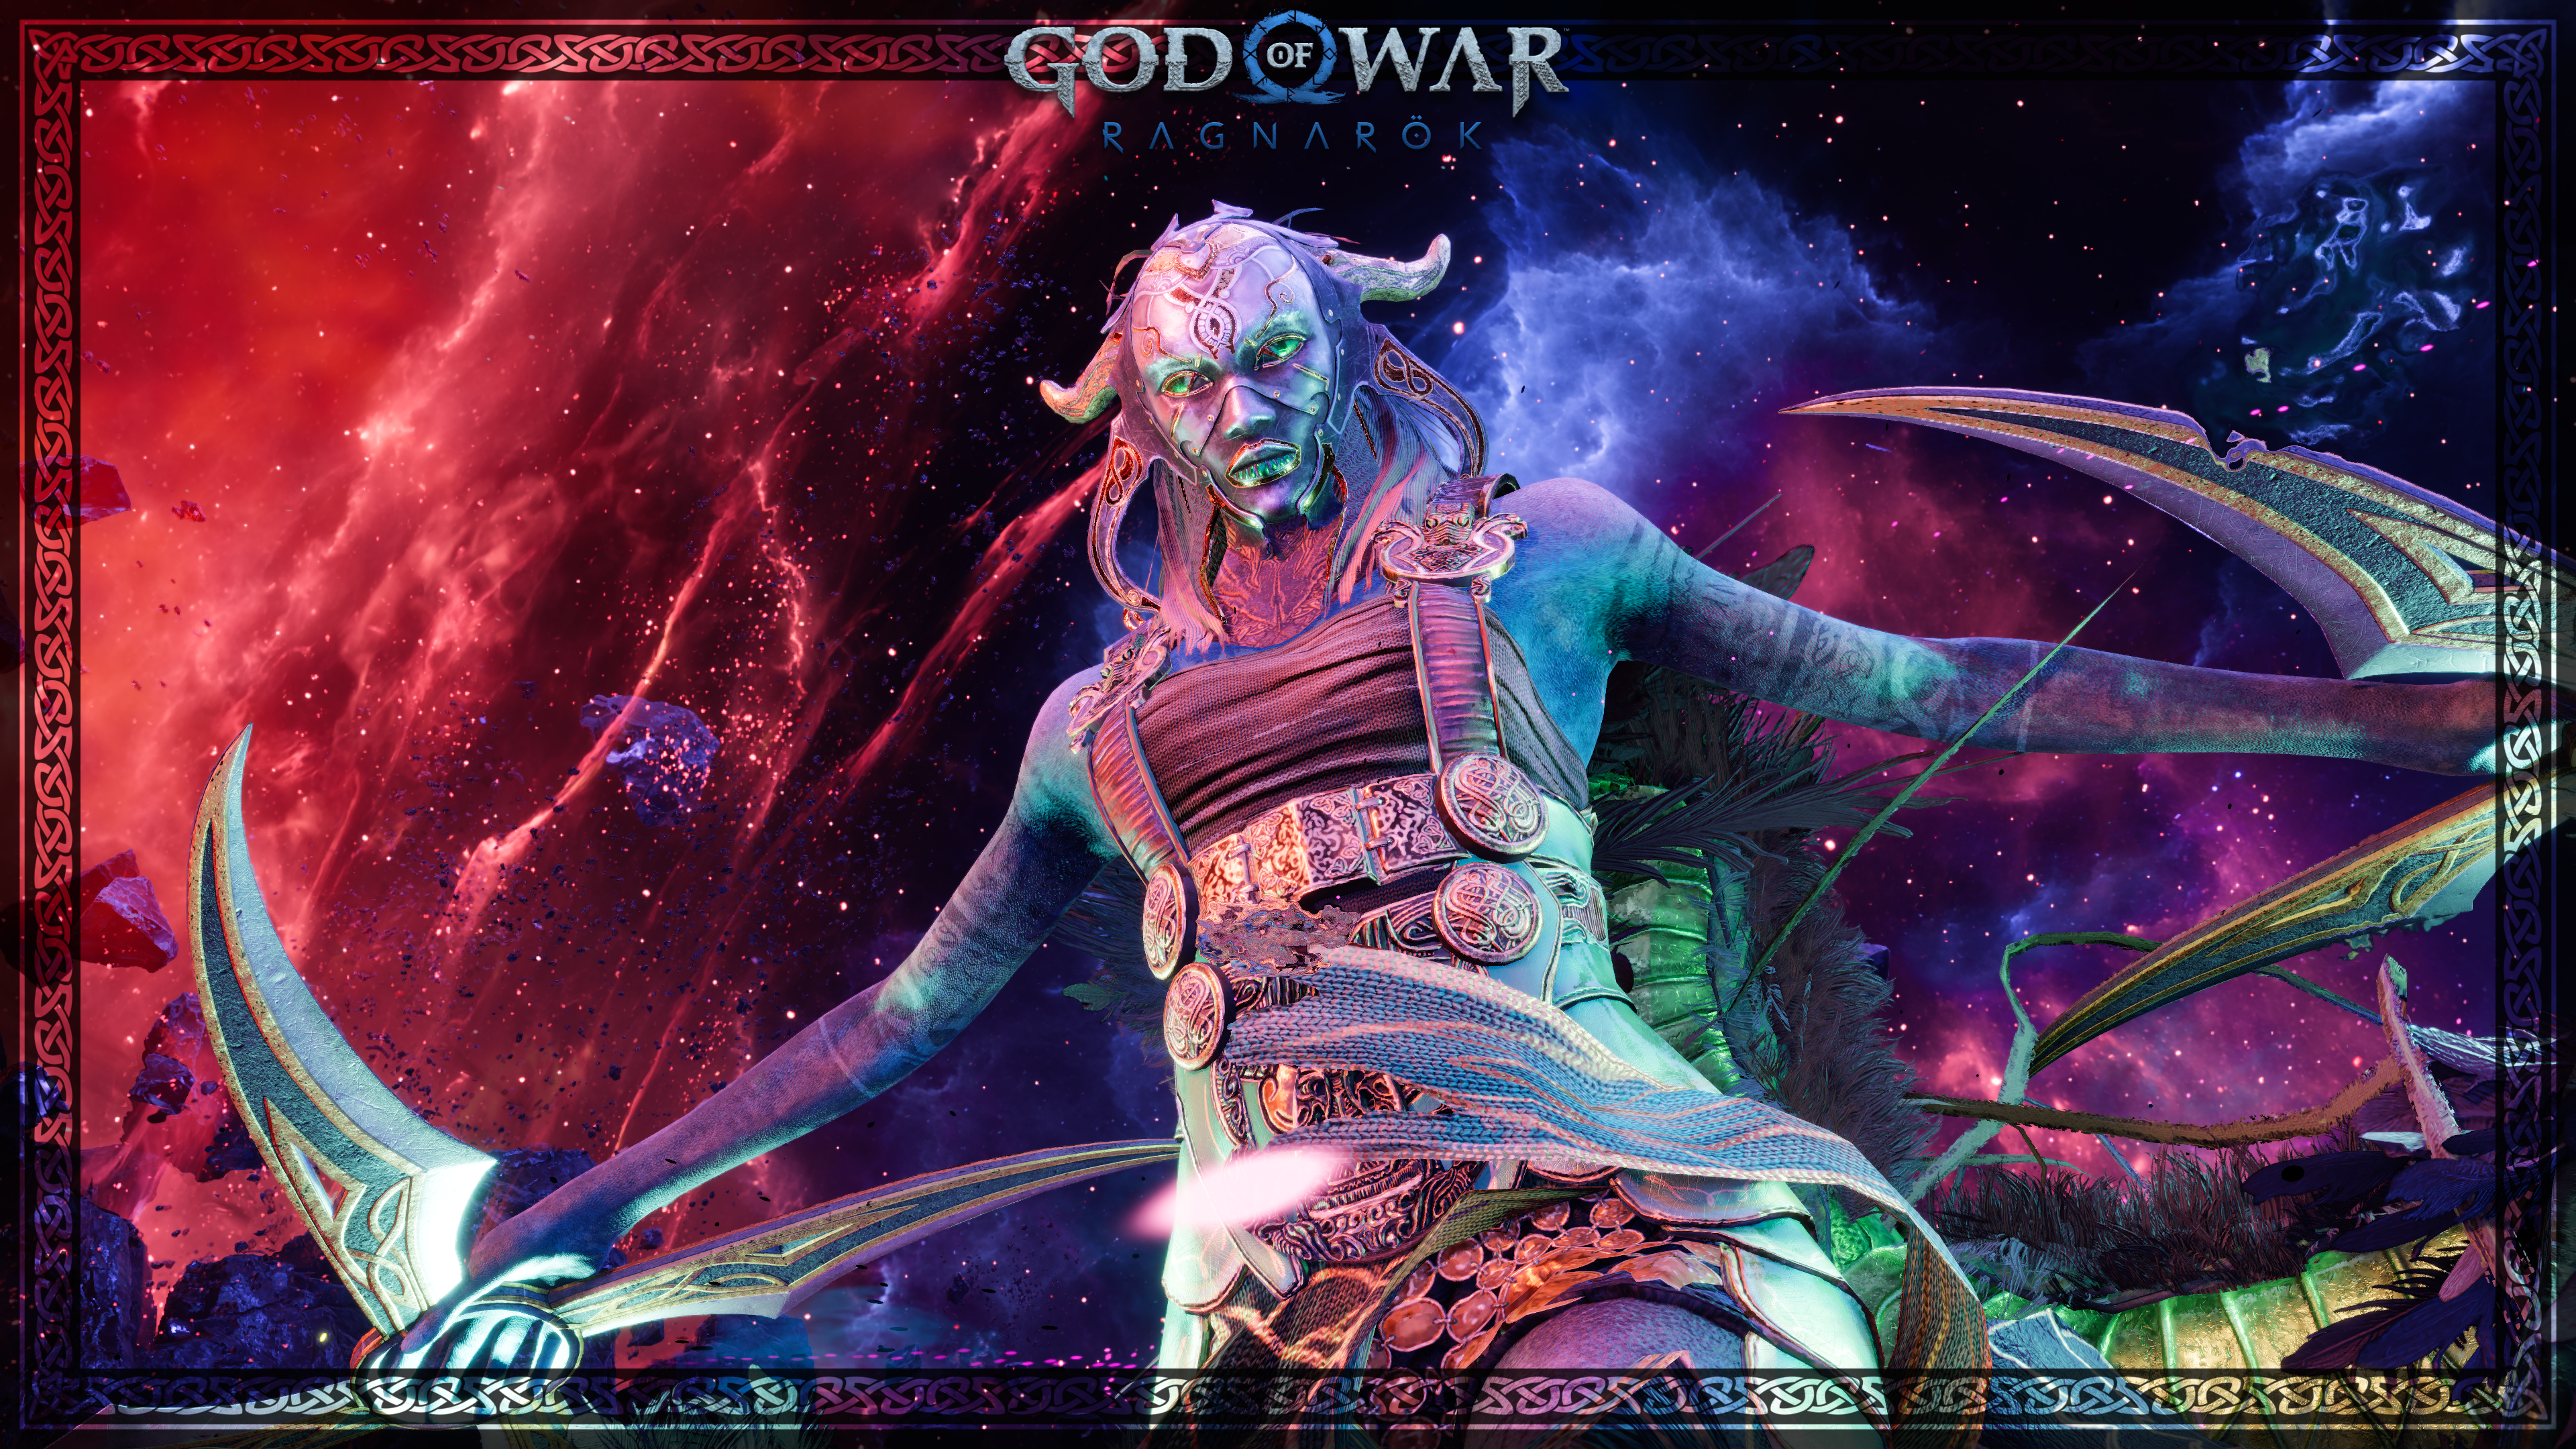 baecea367f6431c453fec85a5044ca60e0075d17 - Der Fotomodus ist jetzt in God of War Ragnarök verfügbar!